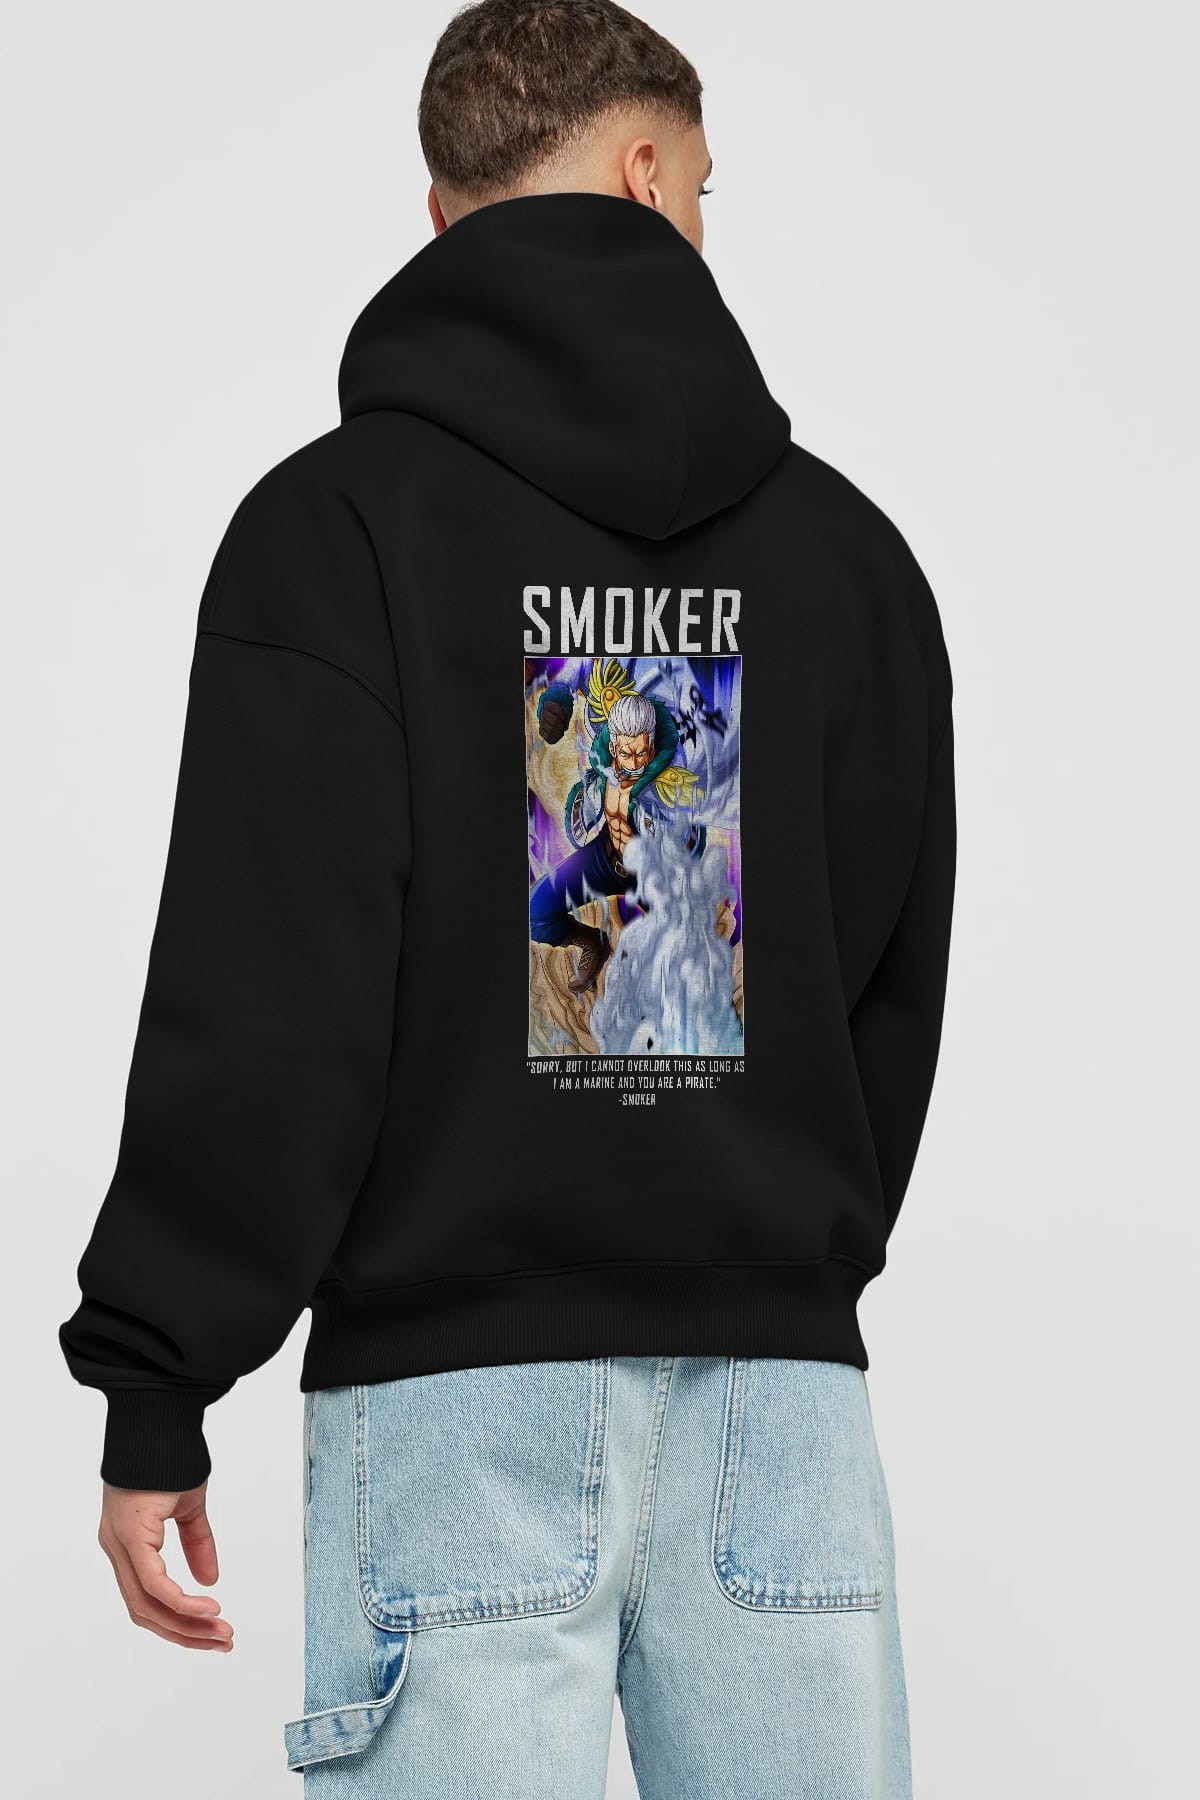 Smoker Anime Arka Baskılı Hoodie Oversize Kapüşonlu Sweatshirt Erkek Kadın Unisex